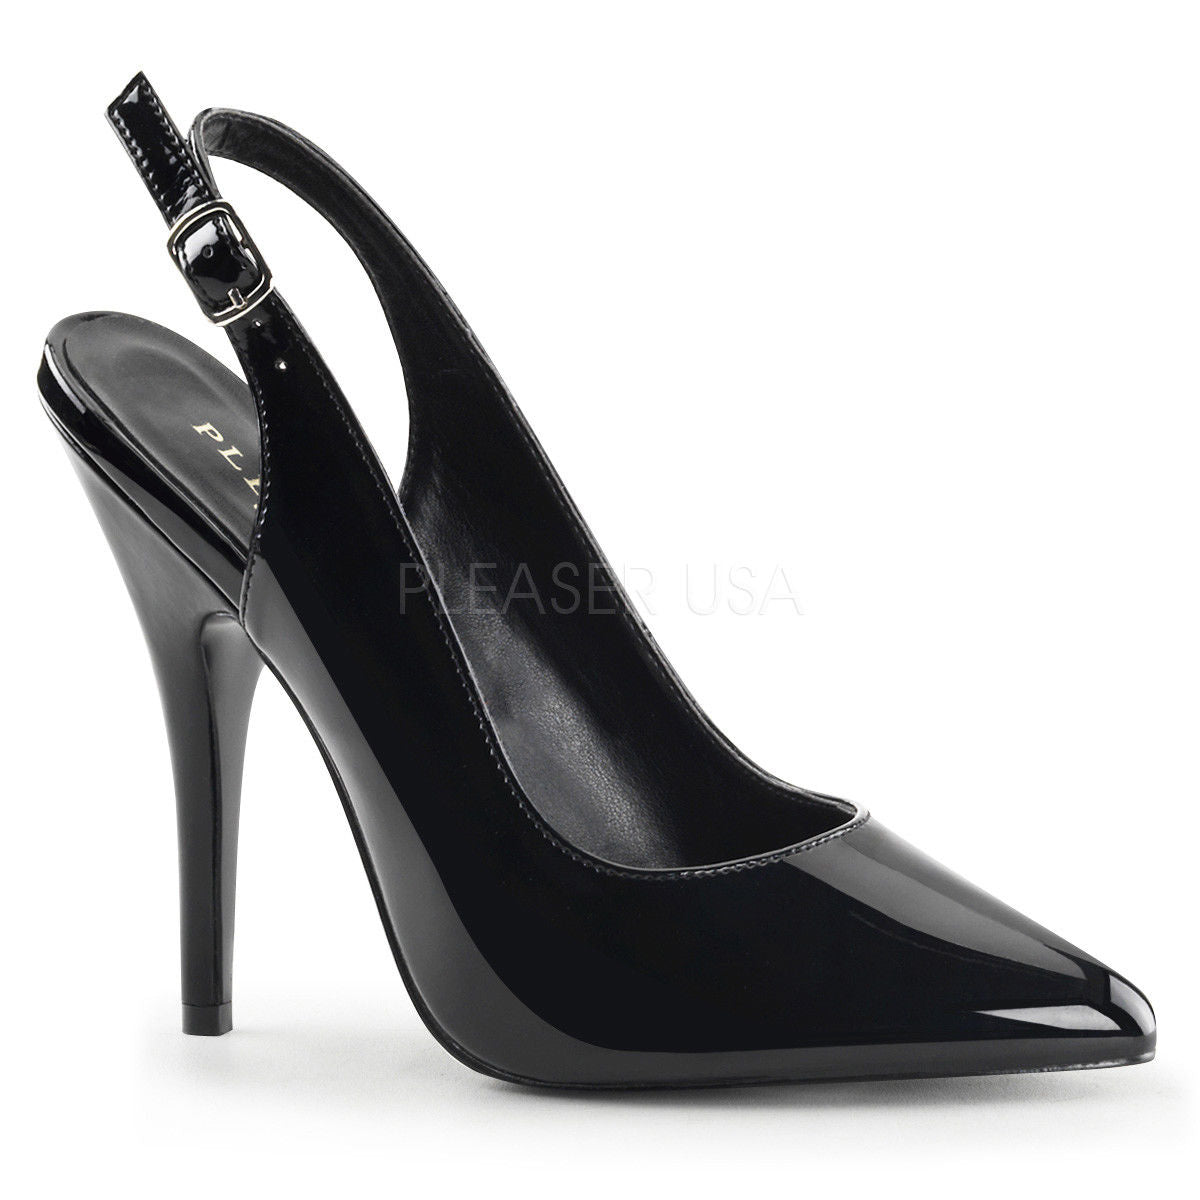 PLEASER Seduce-317 Black Slingbacks Pumps 5" Heels Drag Women's Plus Size 4-15 - A Shoe Addiction